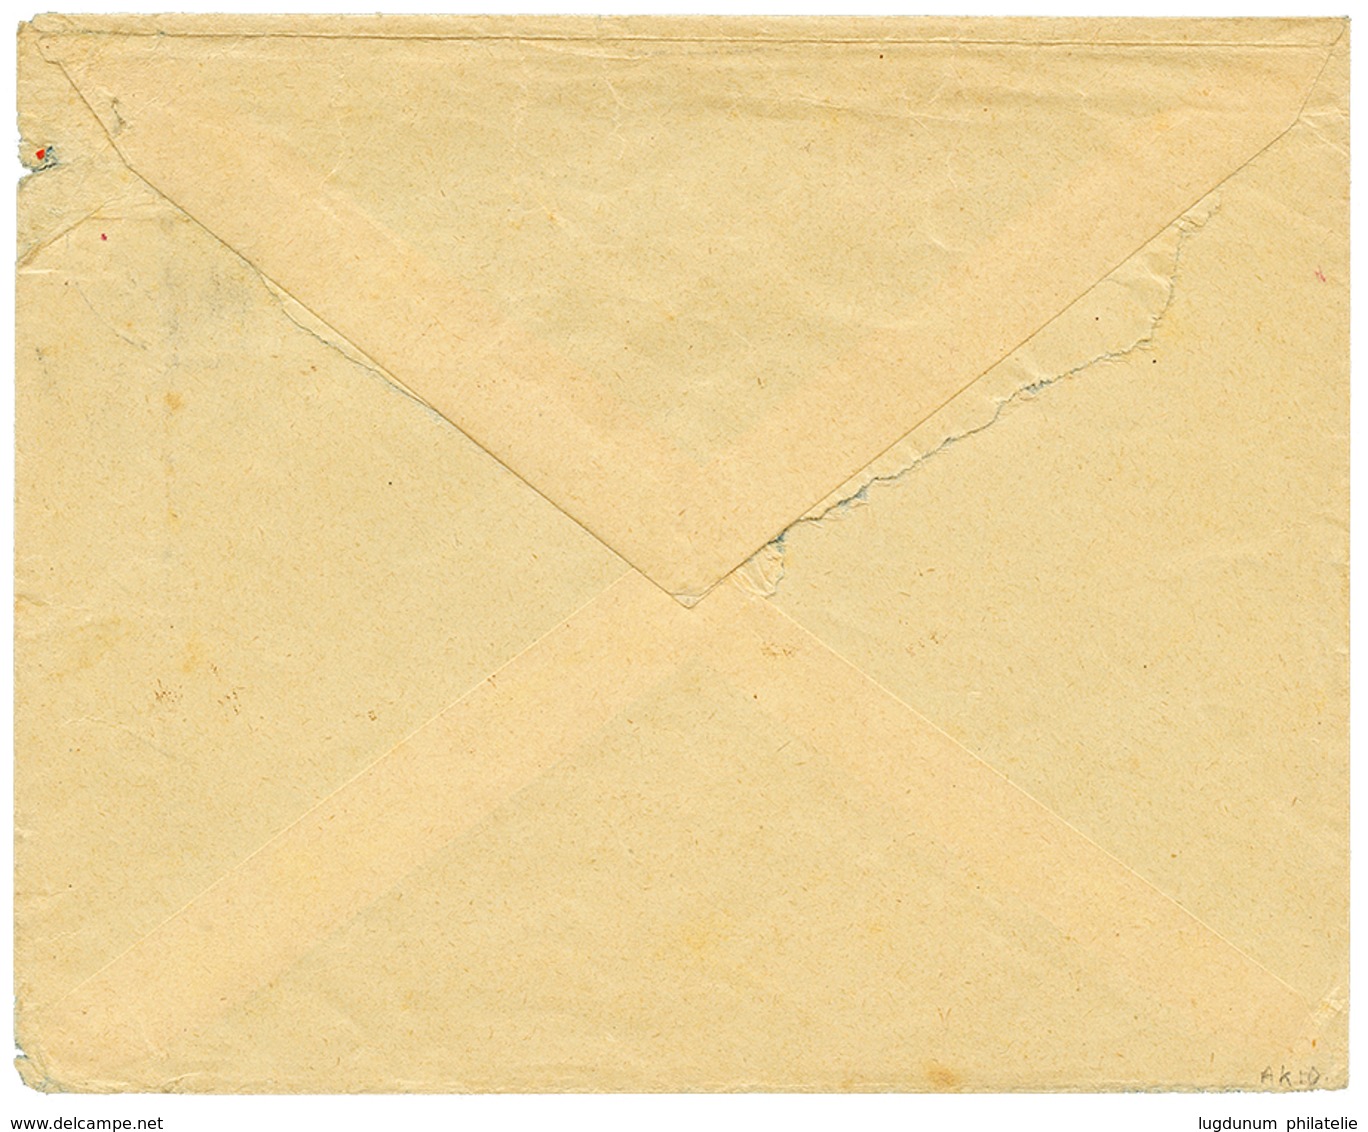 1910 4h(x2) Canc. TAVETA DEUTSCHE FELDPOST + Red Cachet ZENZUR PASSIERT DEUTSCH OSTAFRIKA On Envelope To BERLIN. Vf. - África Oriental Alemana